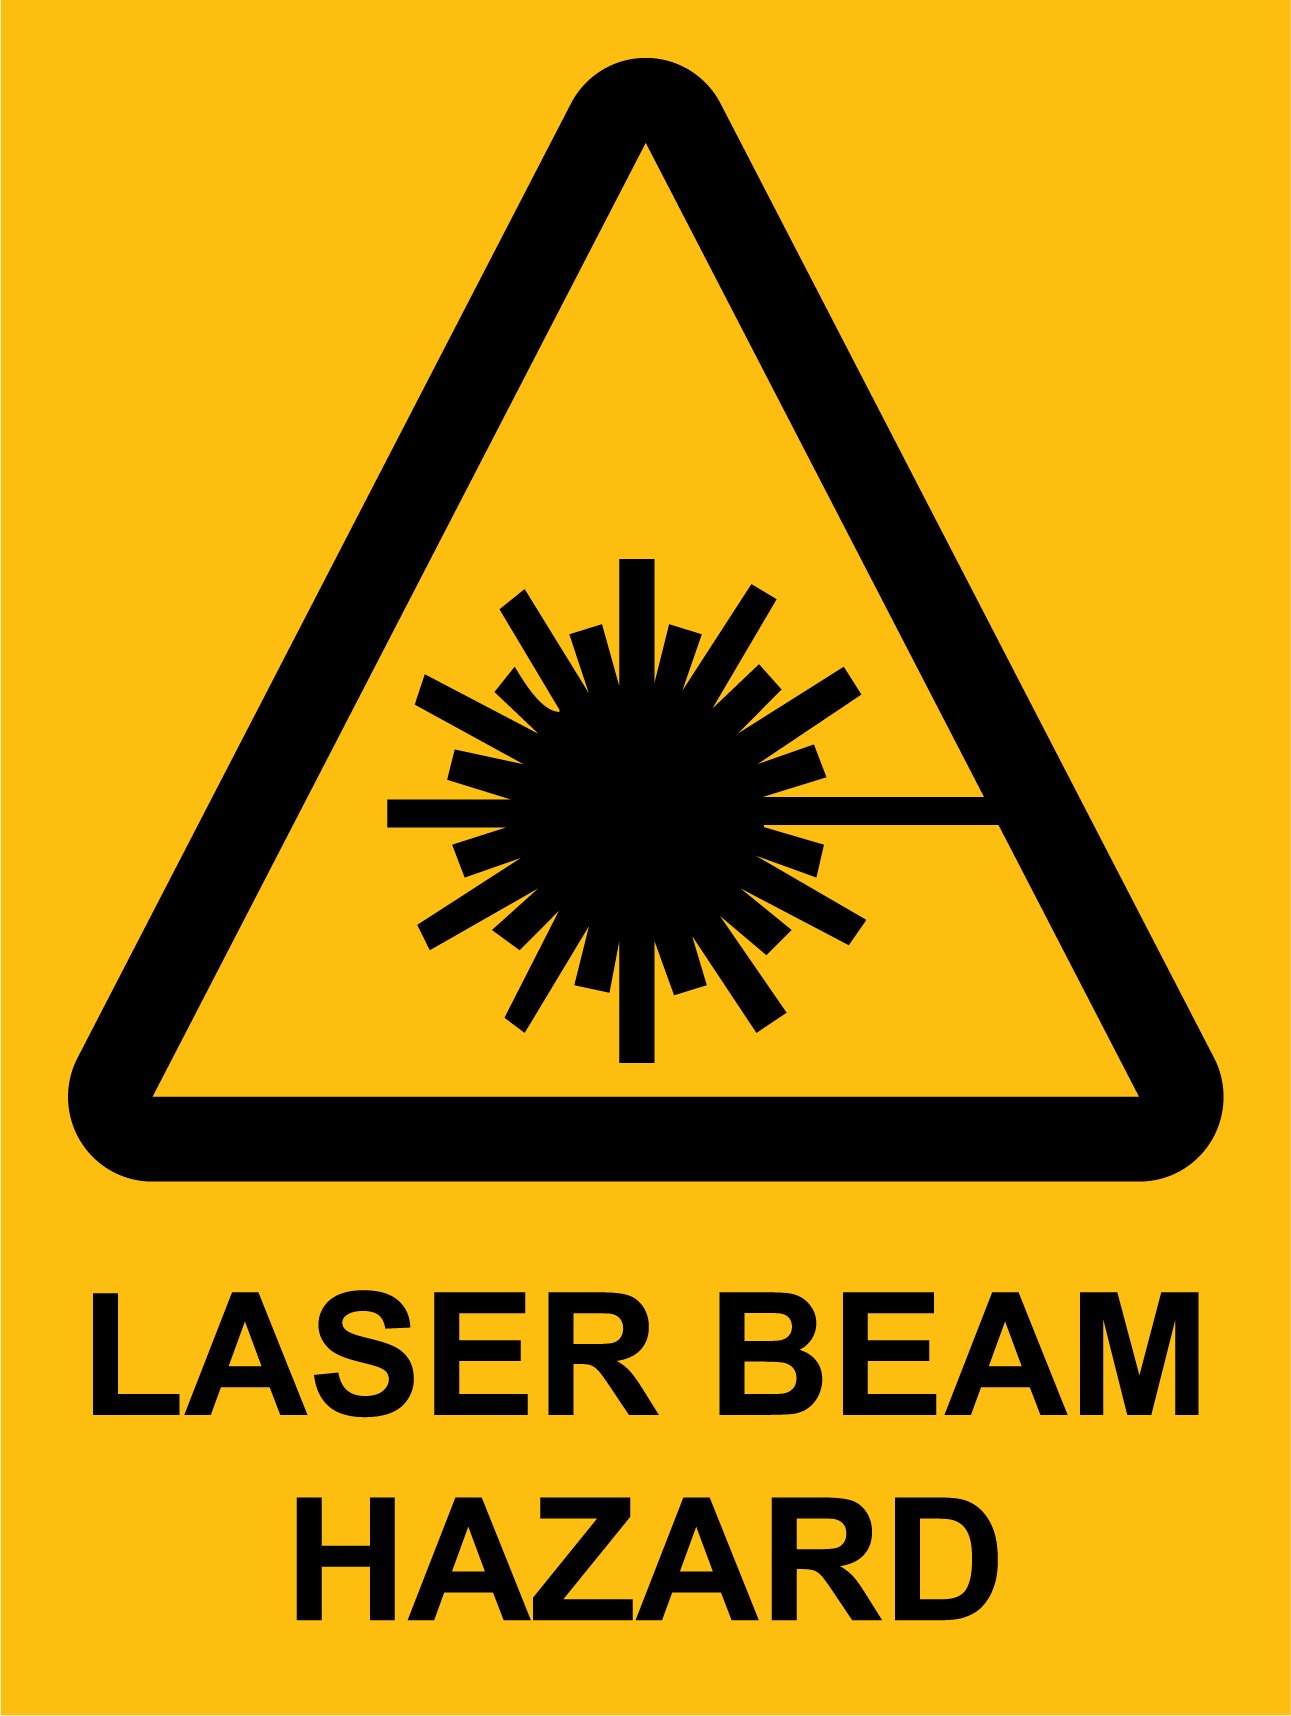 Hazard - Laser Beam Hazard 450 x 600